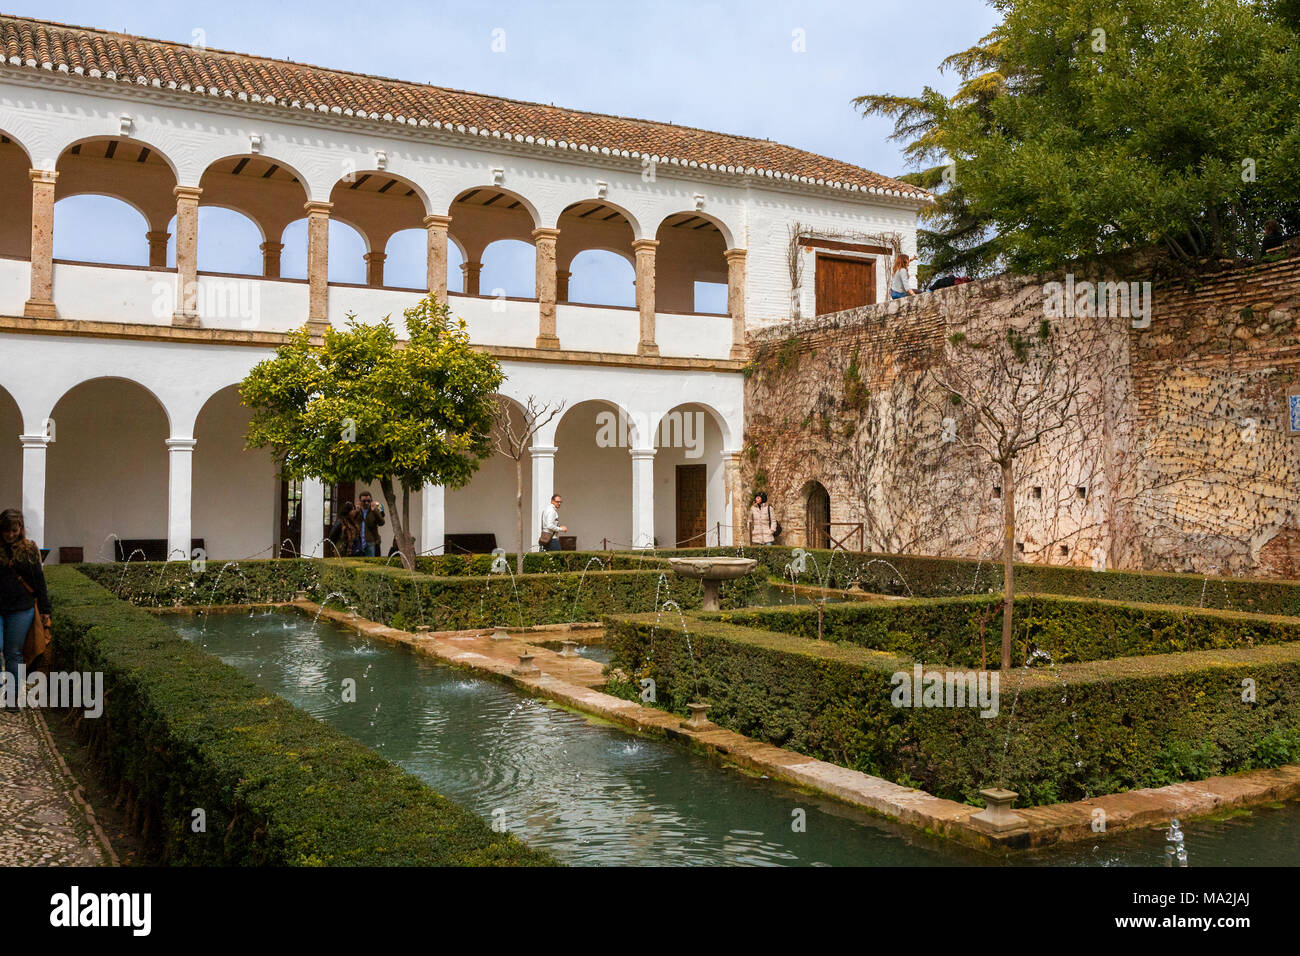 The Patio de los Cipreses, Palacio del Generalife, La Alhambra, Granada, Andalusia, Spain Stock Photo